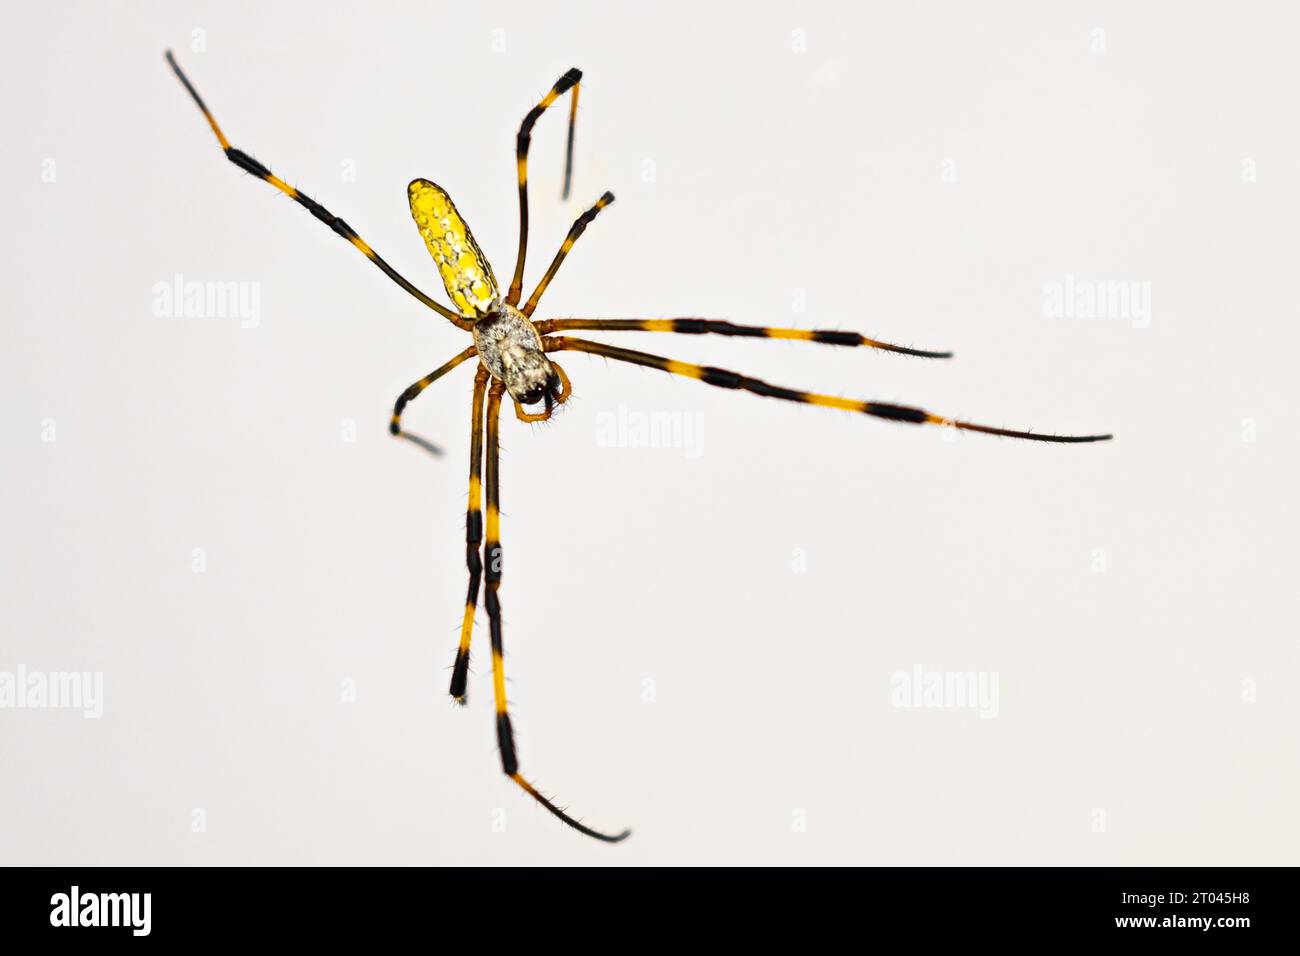 Grande araignée Joro (Trichonephila clavata) de la région métropolitaine d'Atlanta en Géorgie dans le sud-est des États-Unis. Banque D'Images